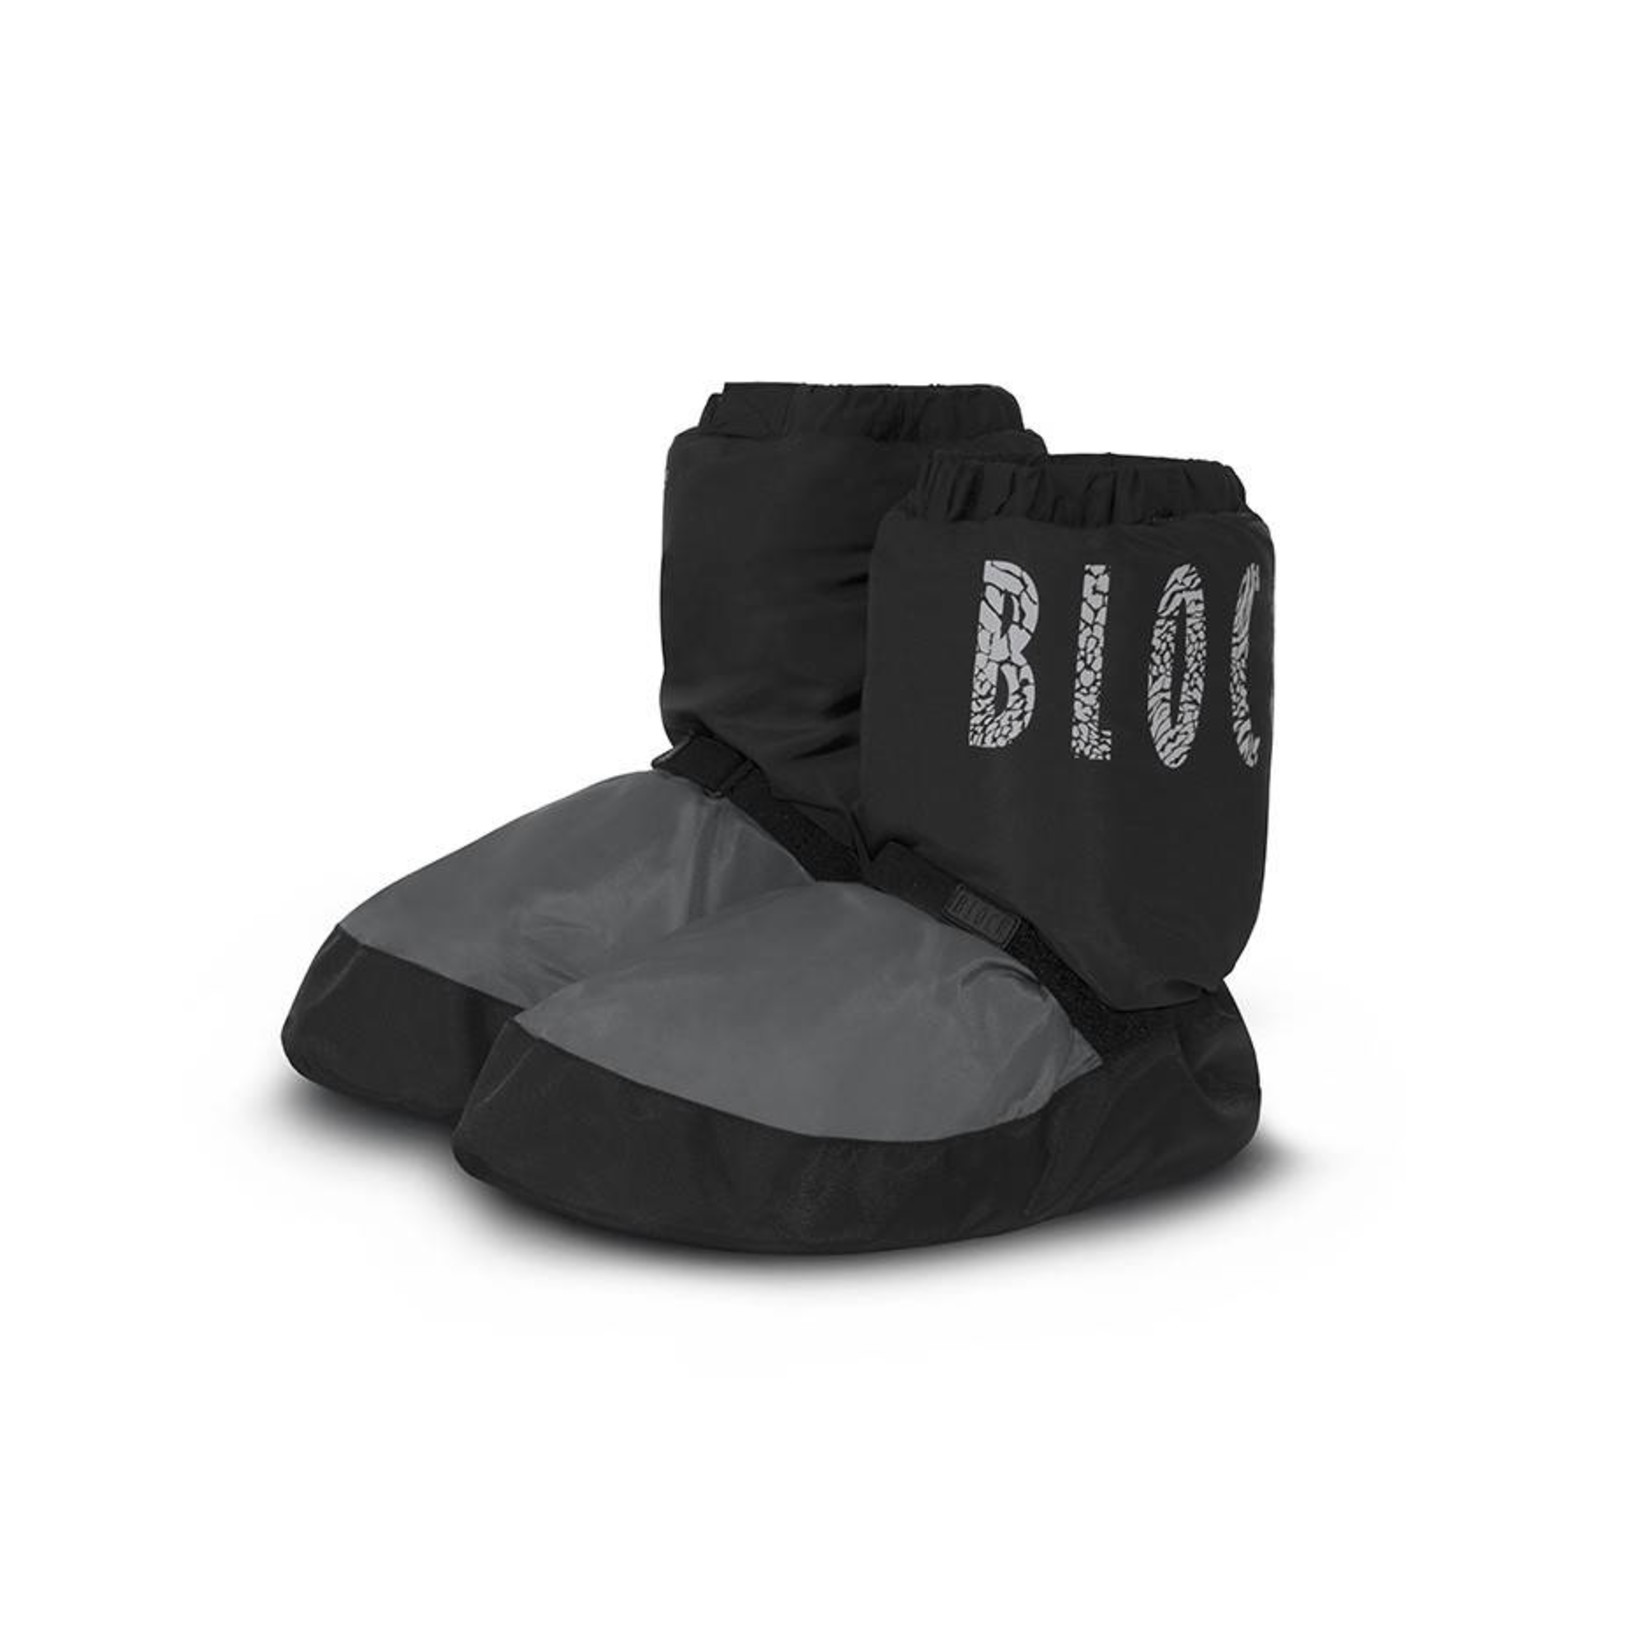 Bloch IM009T Limited Edition Warm-up Bootie